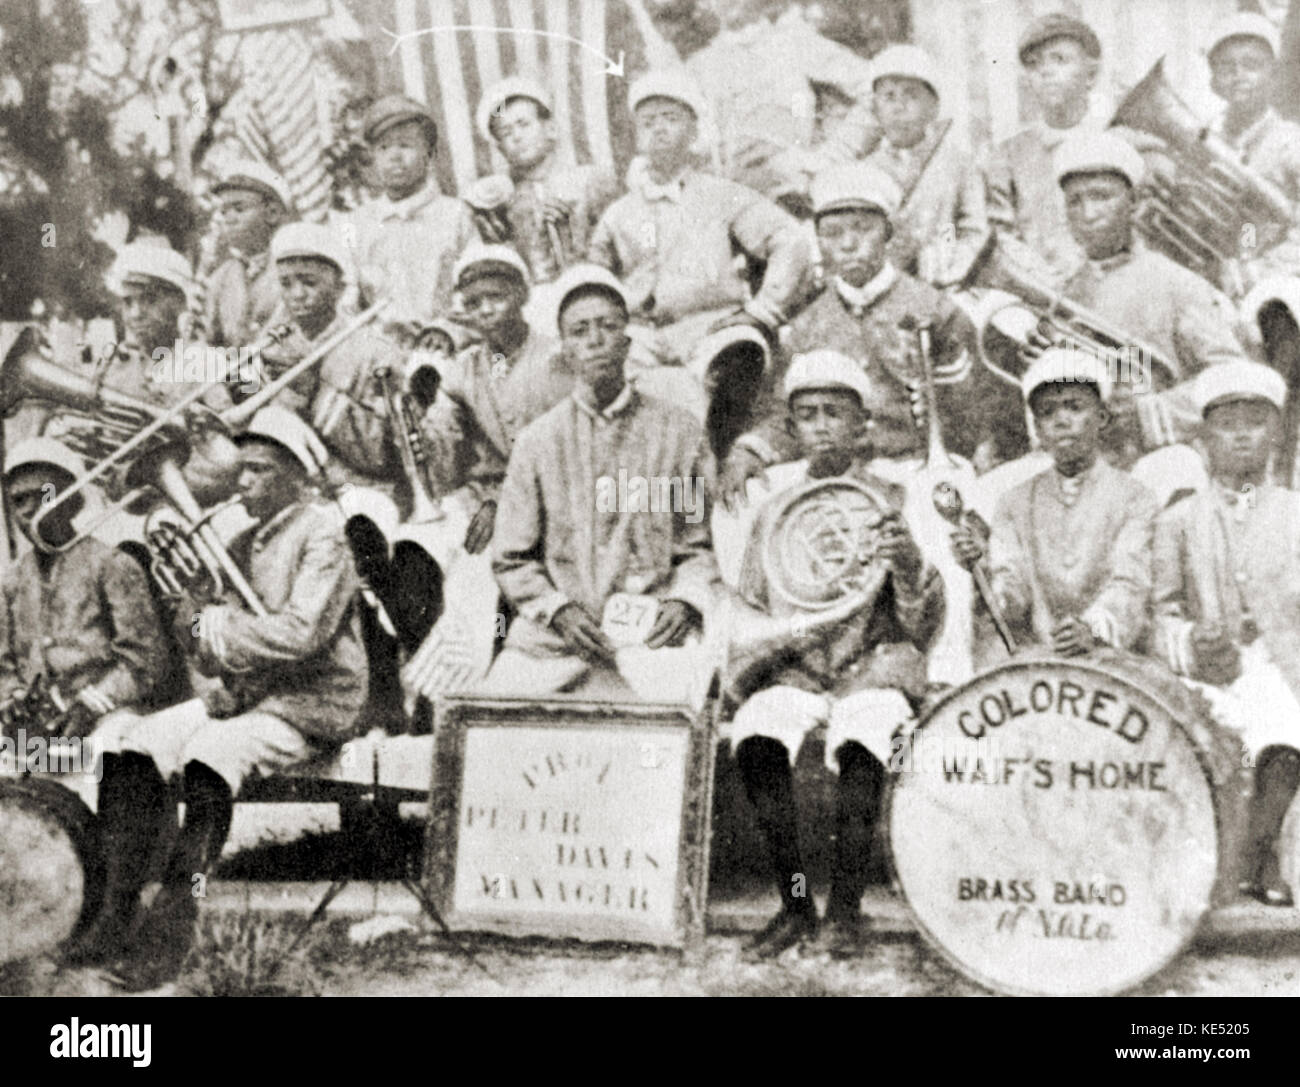 L' épave Couleur Accueil Le Brass Band - Louis Armstrong (milieu de la rangée du haut, avec la flèche pointant vers lui) autour de l'âge de 11 ans. Armstrong : Le musicien de jazz américain, 4 août 1901 - 6 juillet 1971. Satchmo. Banque D'Images